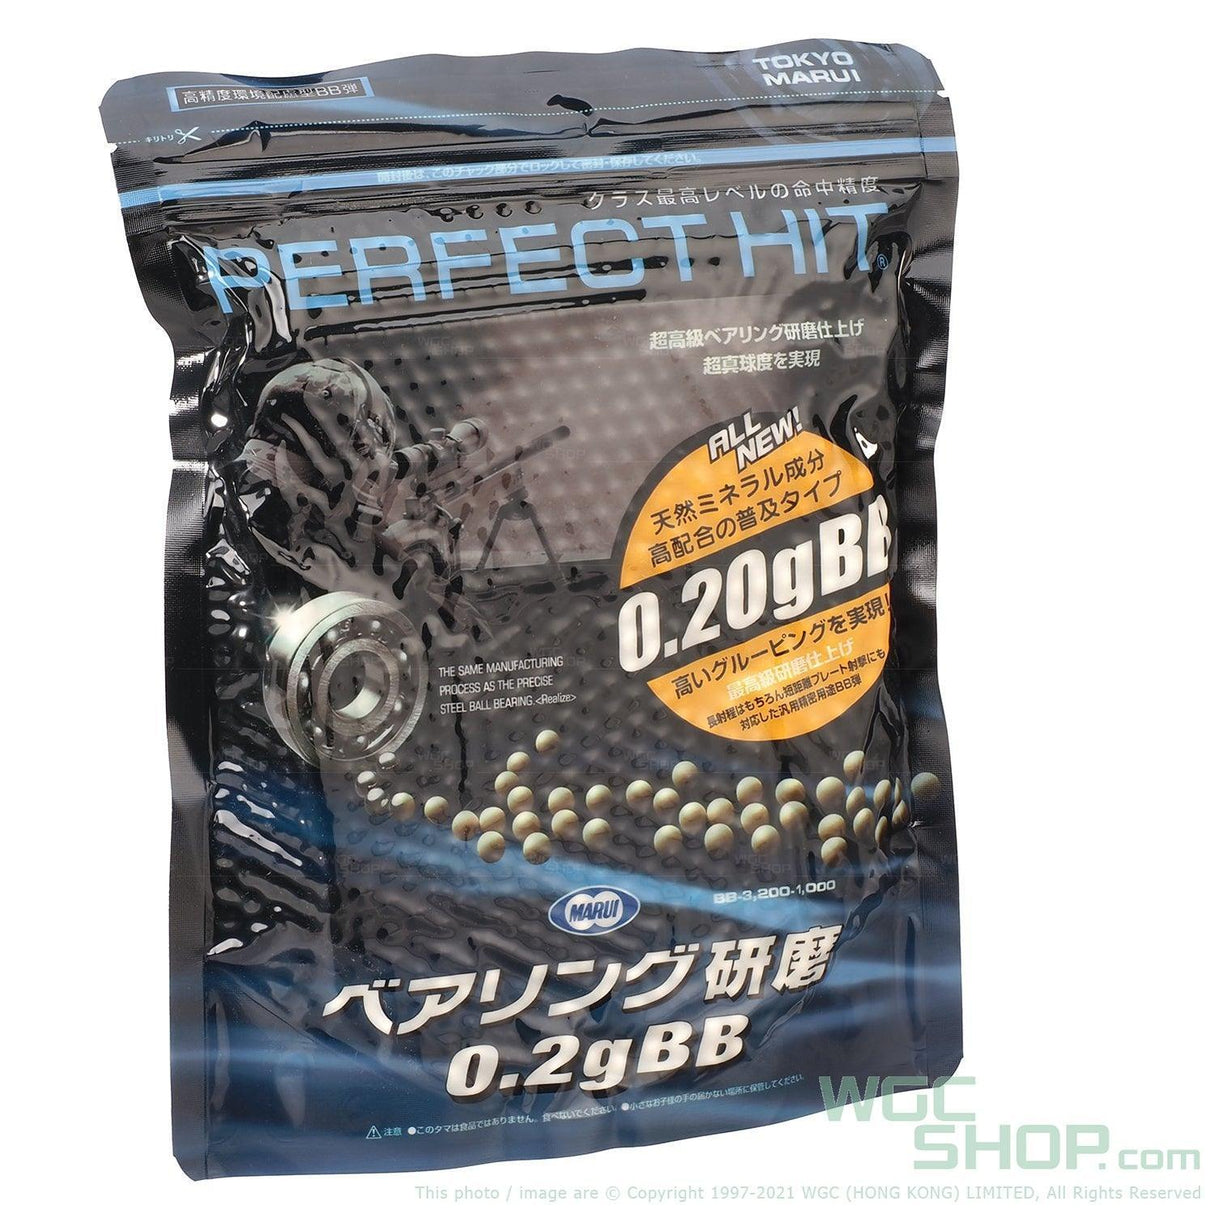 TOKYO MARUI 0.2g BB Bullets ( 3200 Pellets ) - WGC Shop